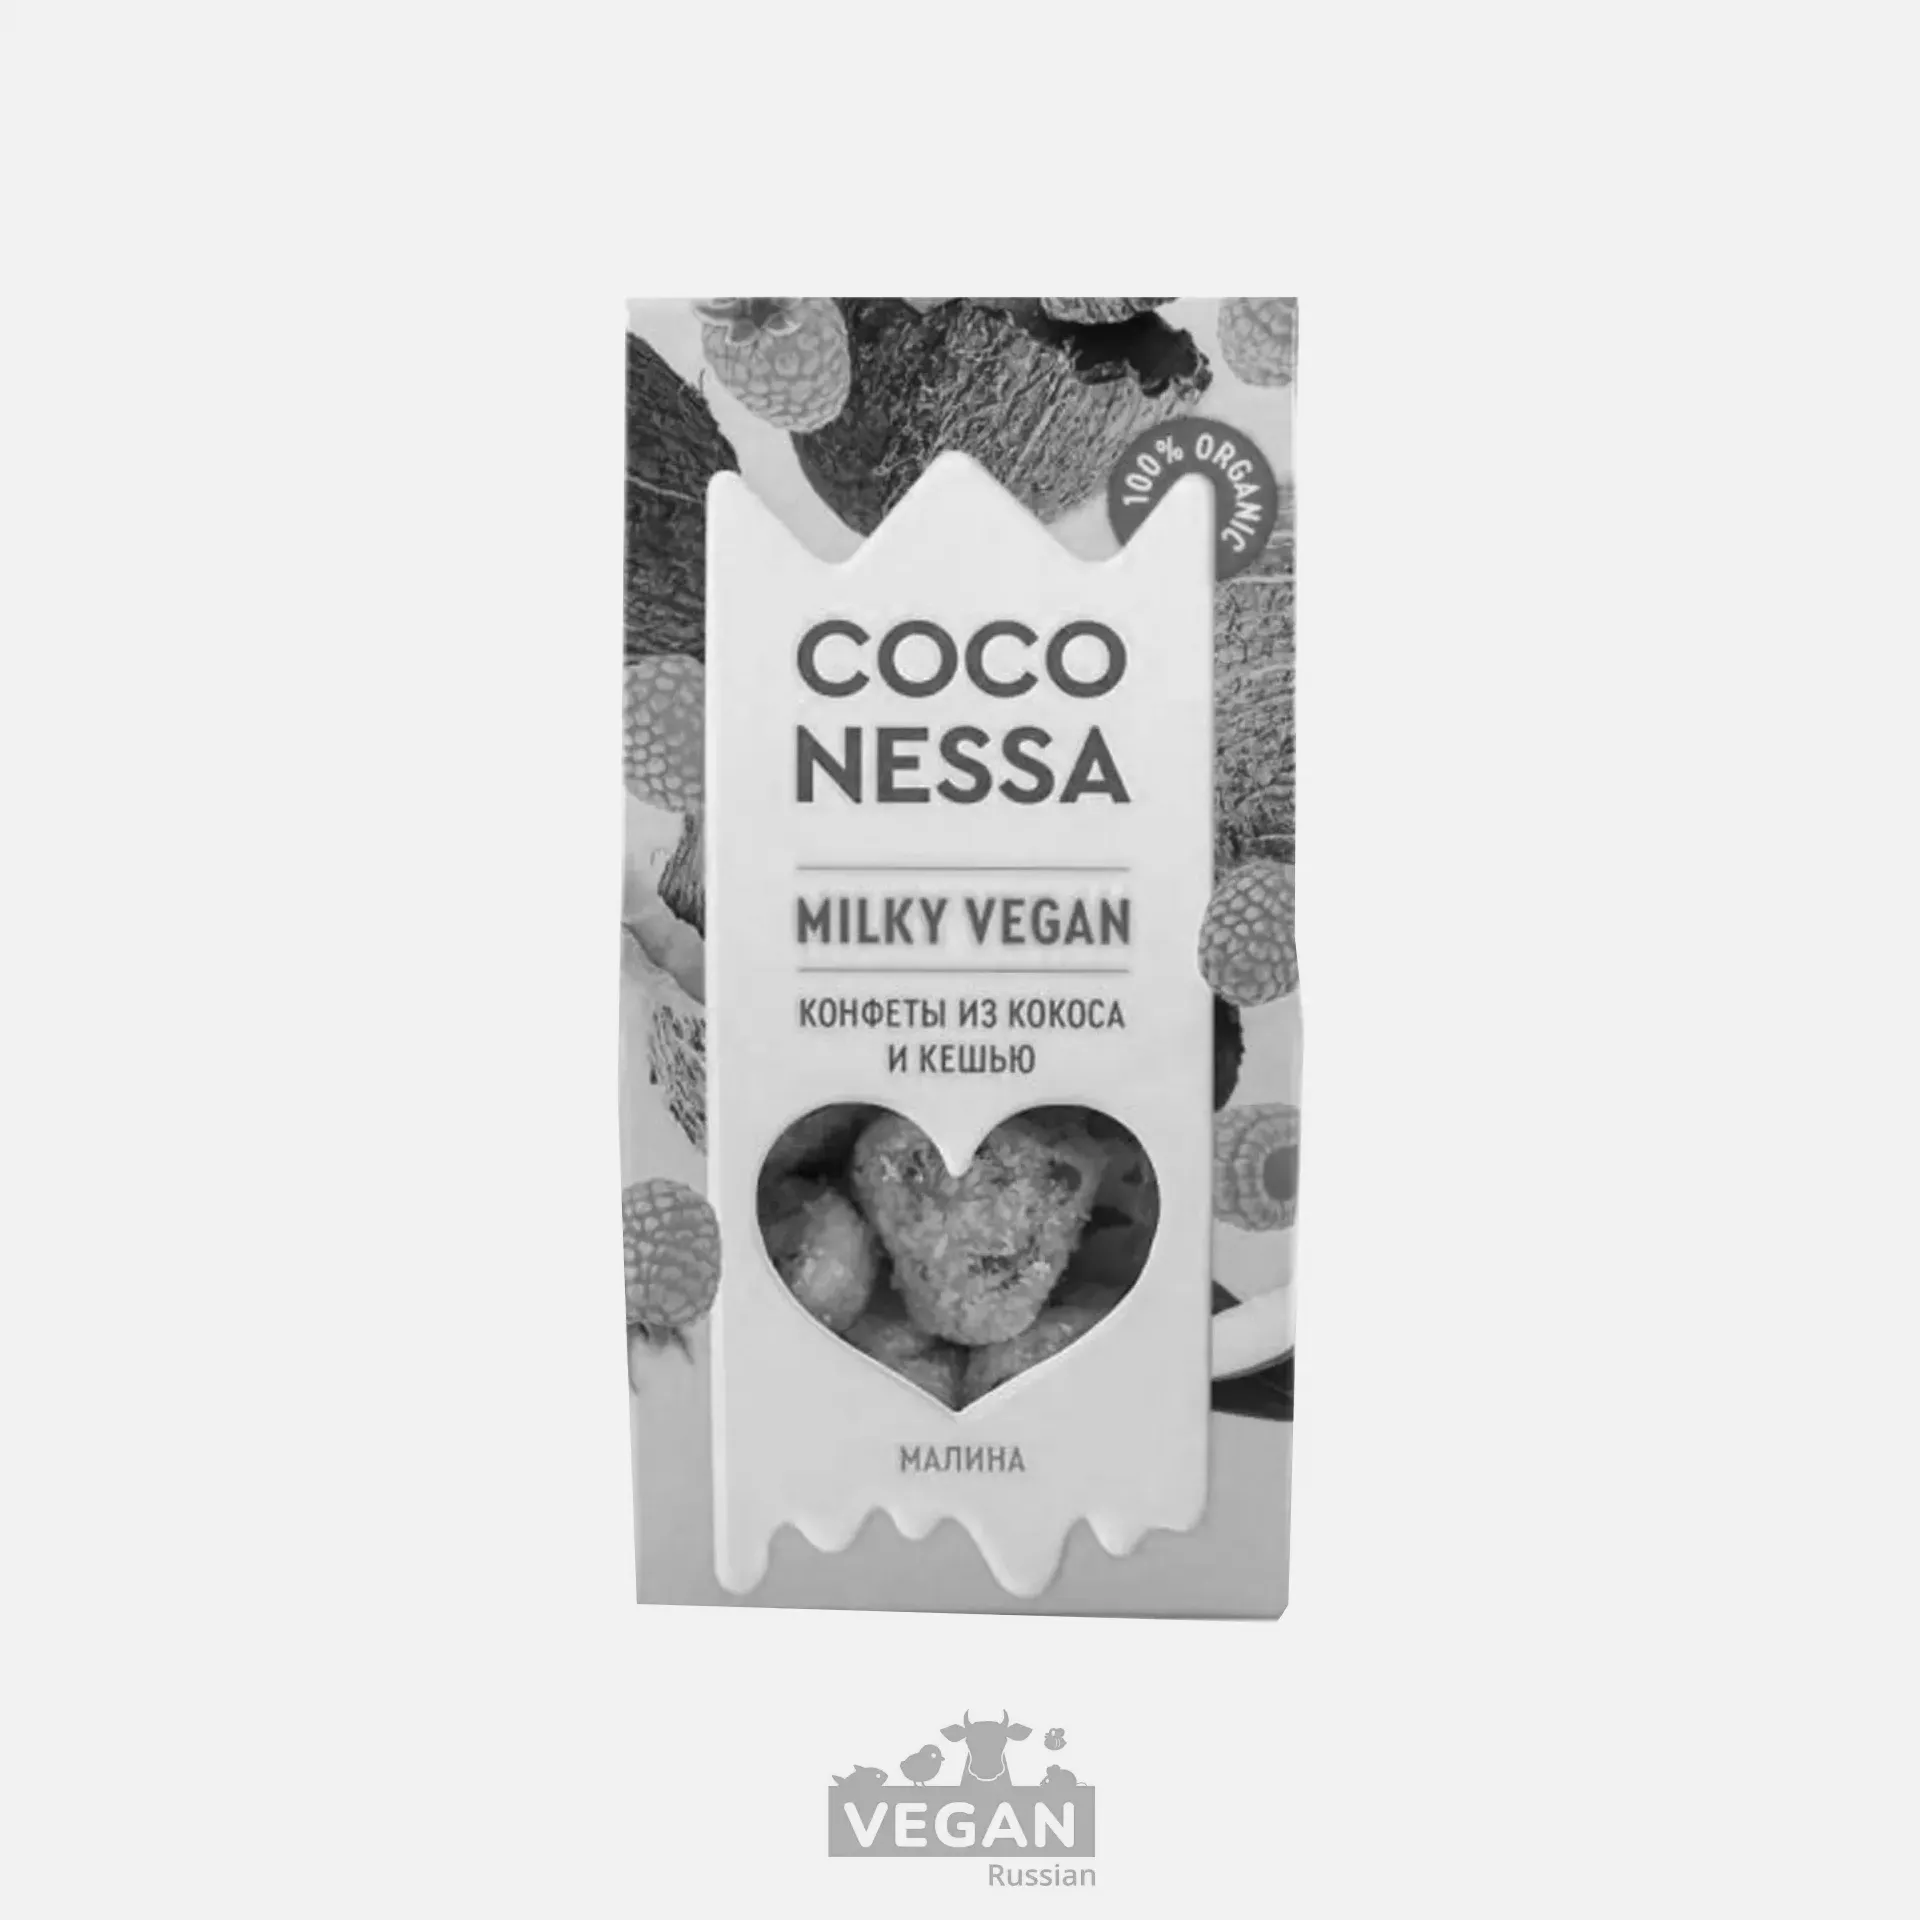 Архив: Конфеты кокосовые с малиной Milky vegan Coconessa 90 г